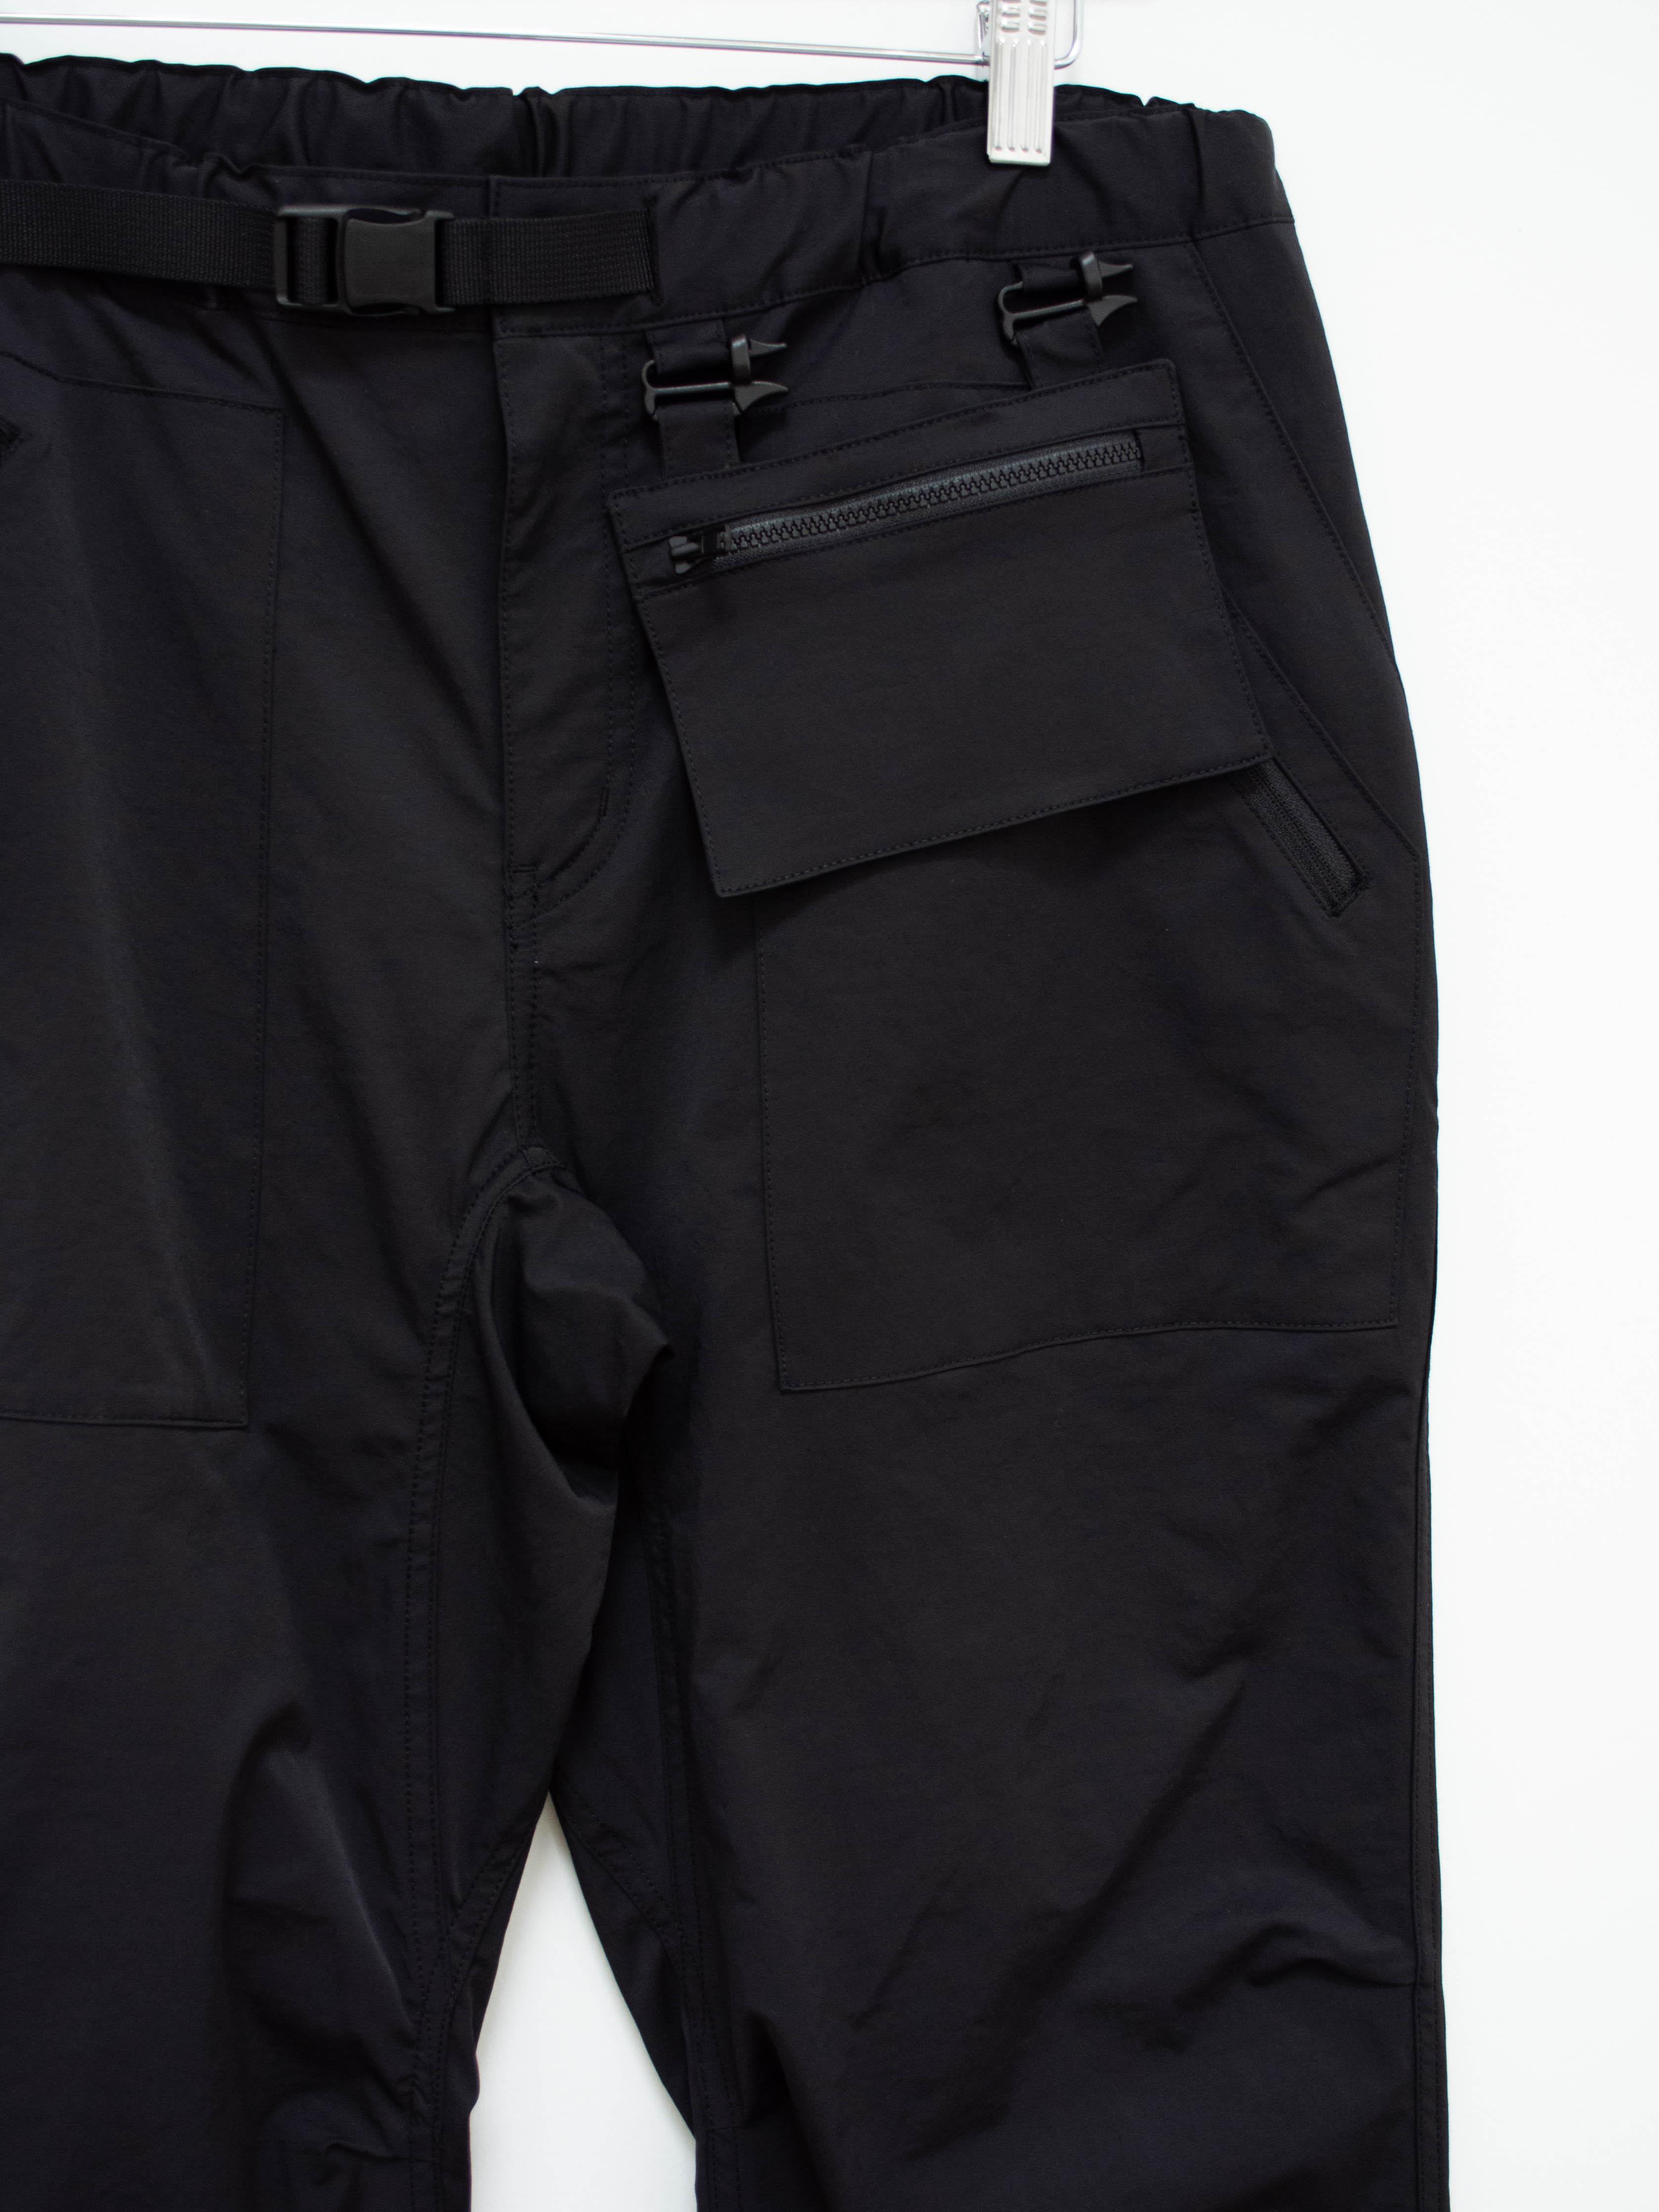 Namu Shop - CAYL Mountain Pants 2 - Black